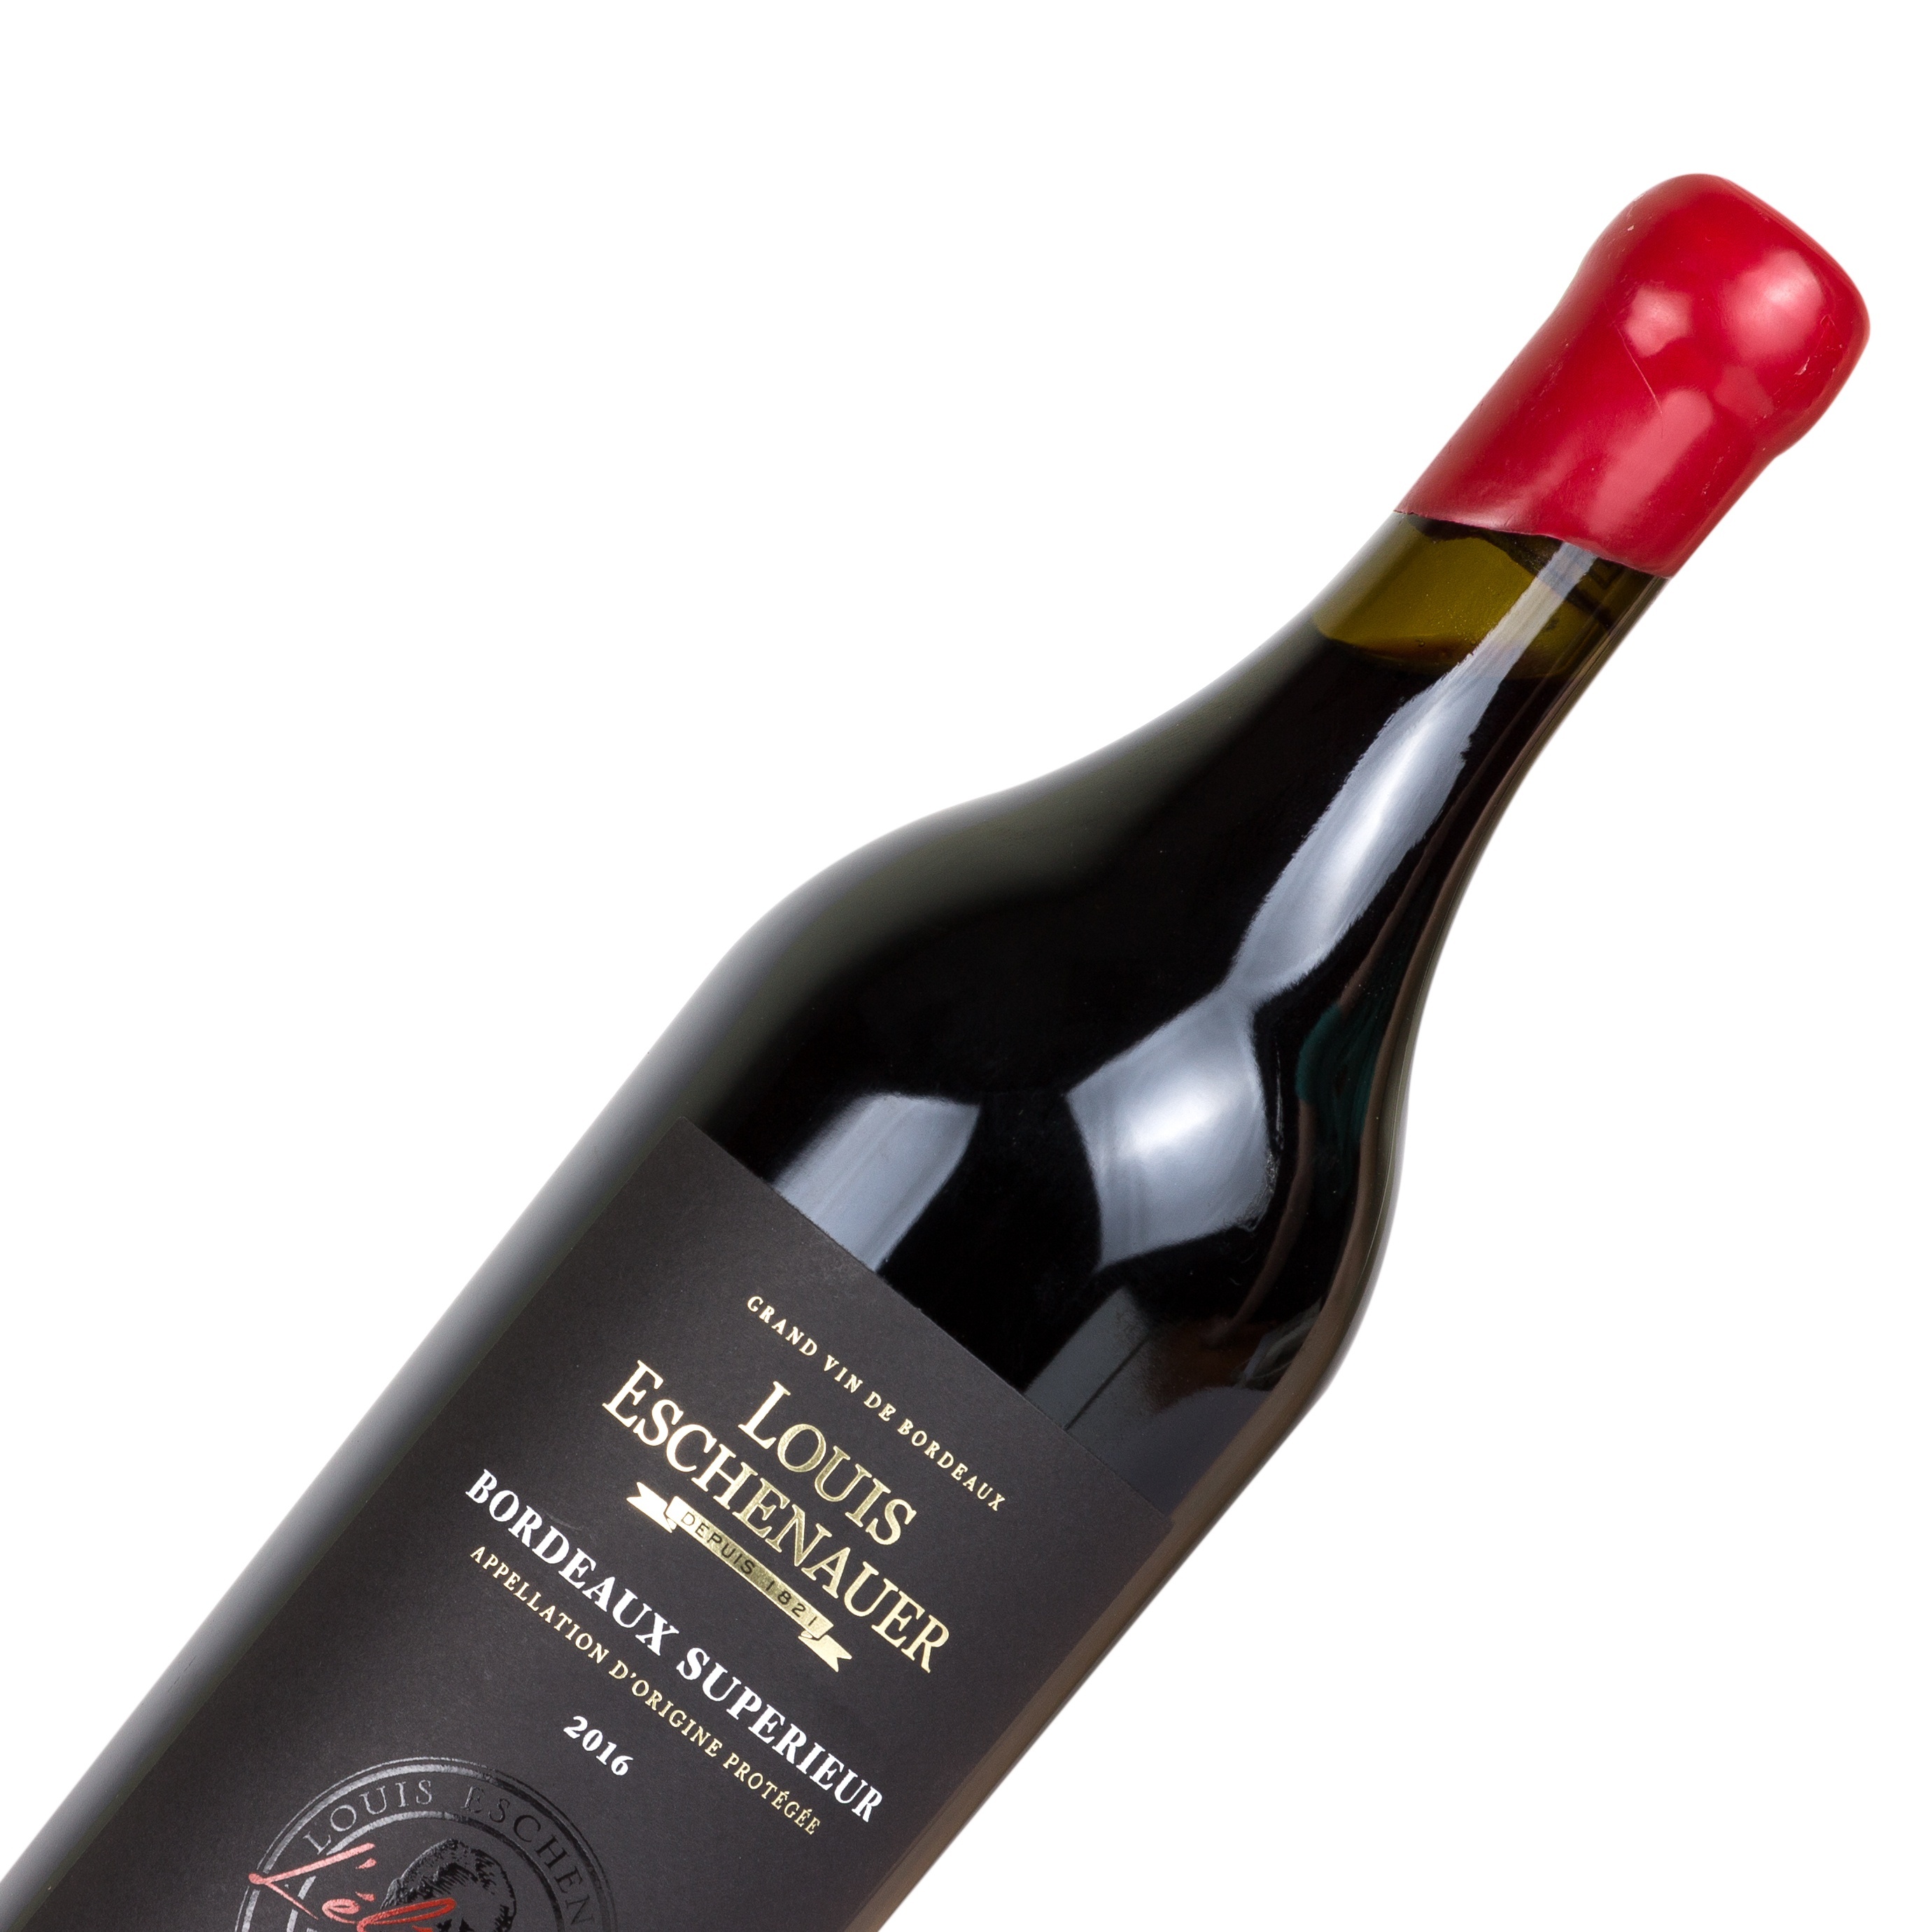 Louis Eschenauer Bordeaux Superieur L'Elegance 2016 Set 6 Bottles - 3